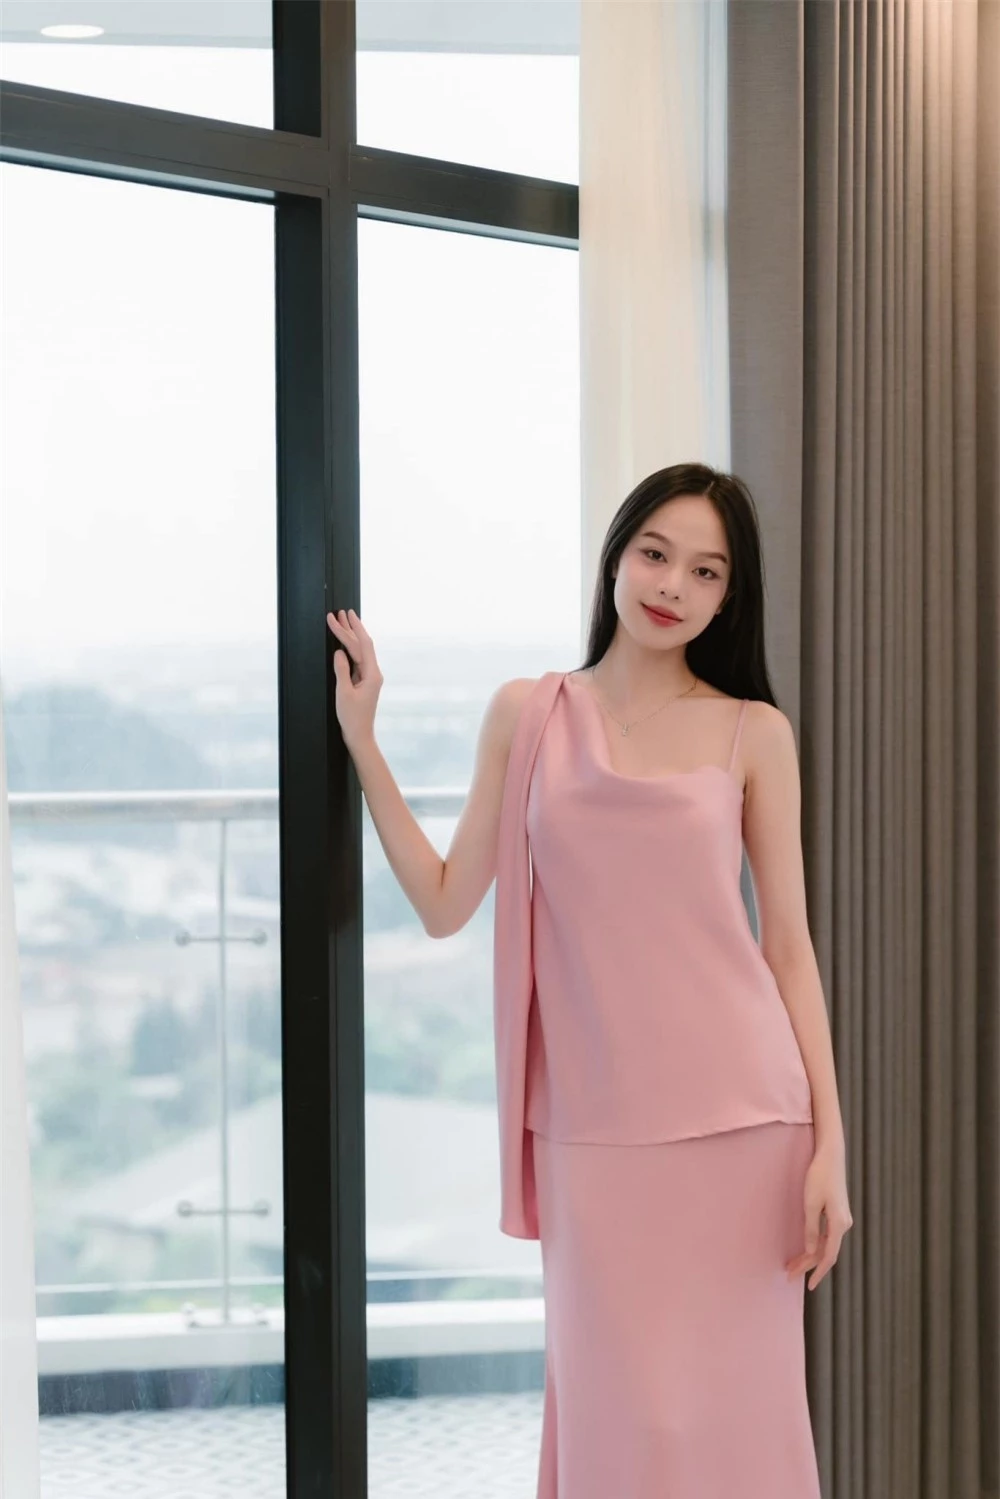 Đã tìm ra lý do Hoa hậu Thanh Thủy ngày càng chăm diện trang phục màu hồng ảnh 2